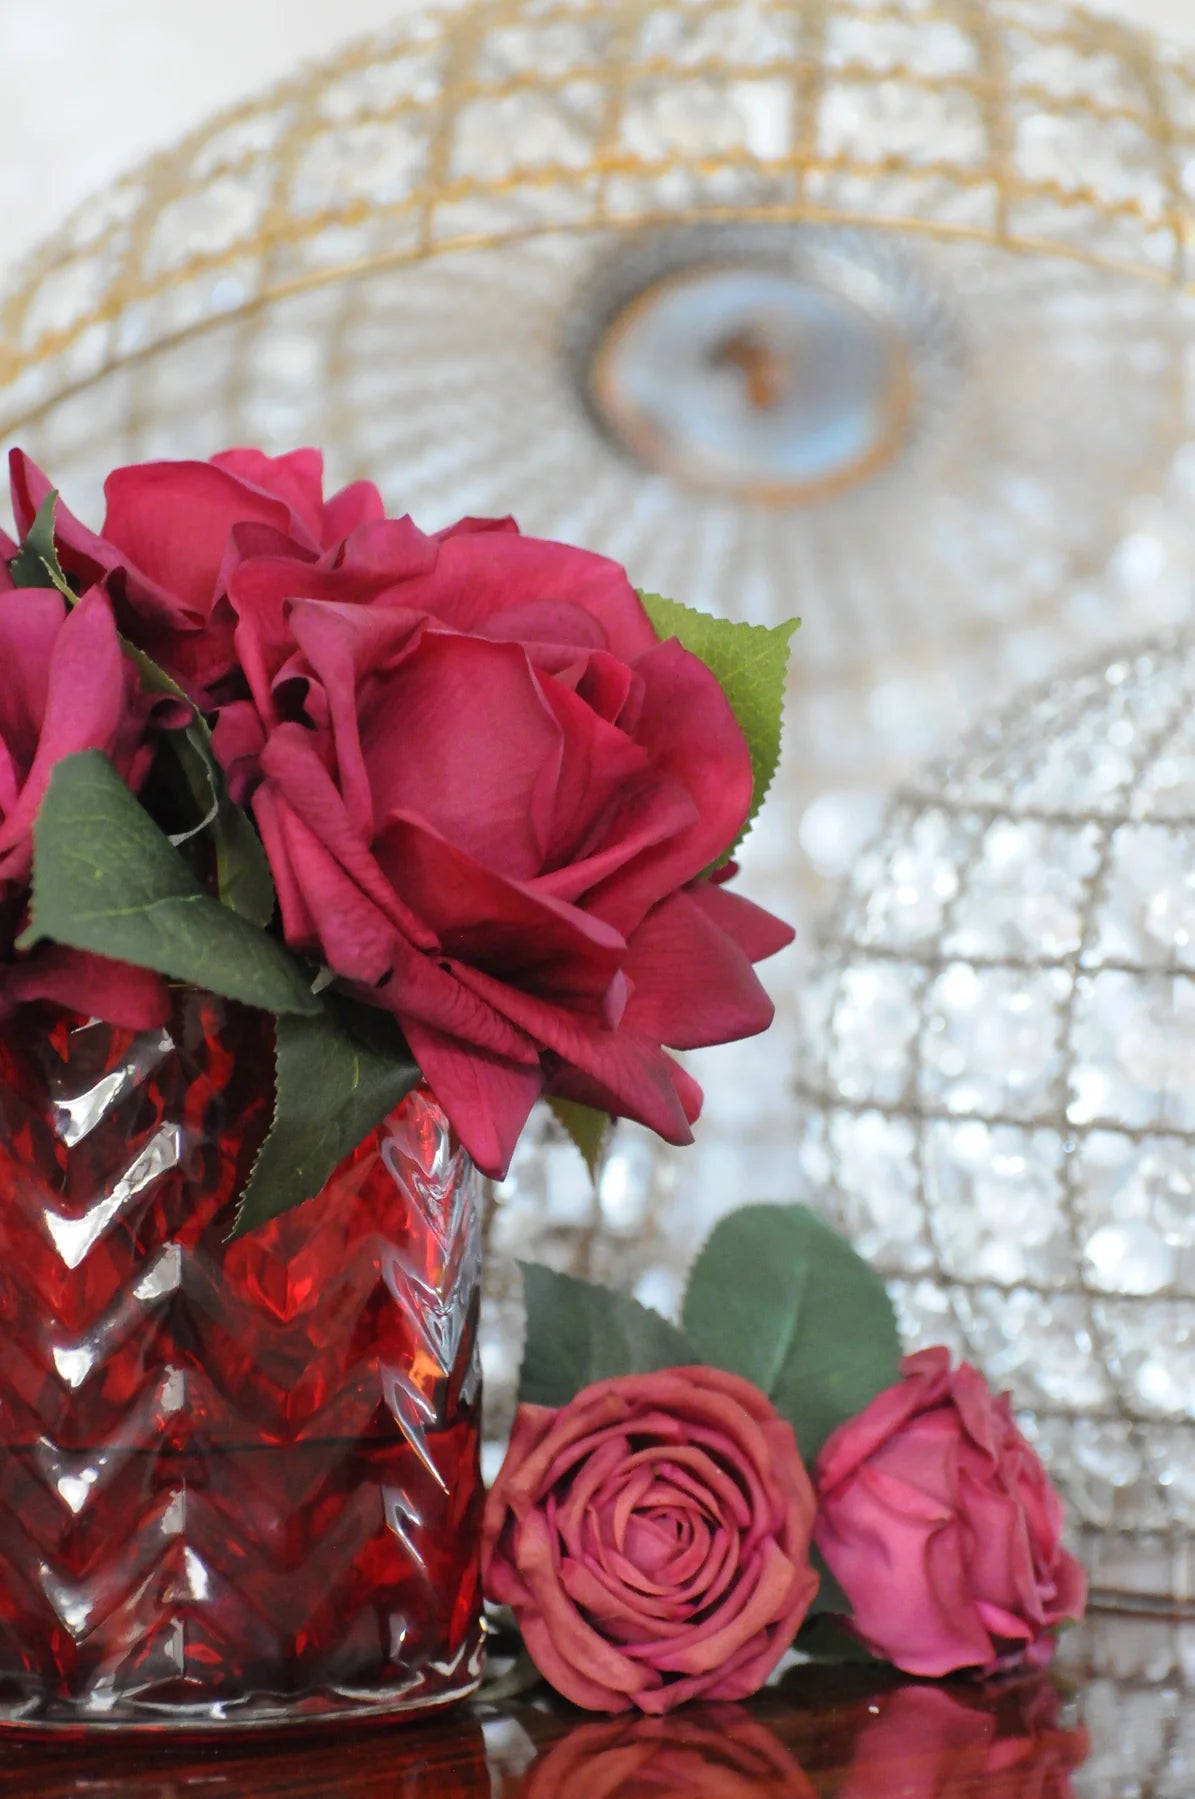 rote herringbone duftblume mit zwei roten rosen daneben liegend und kristalllampen im hintergrund.